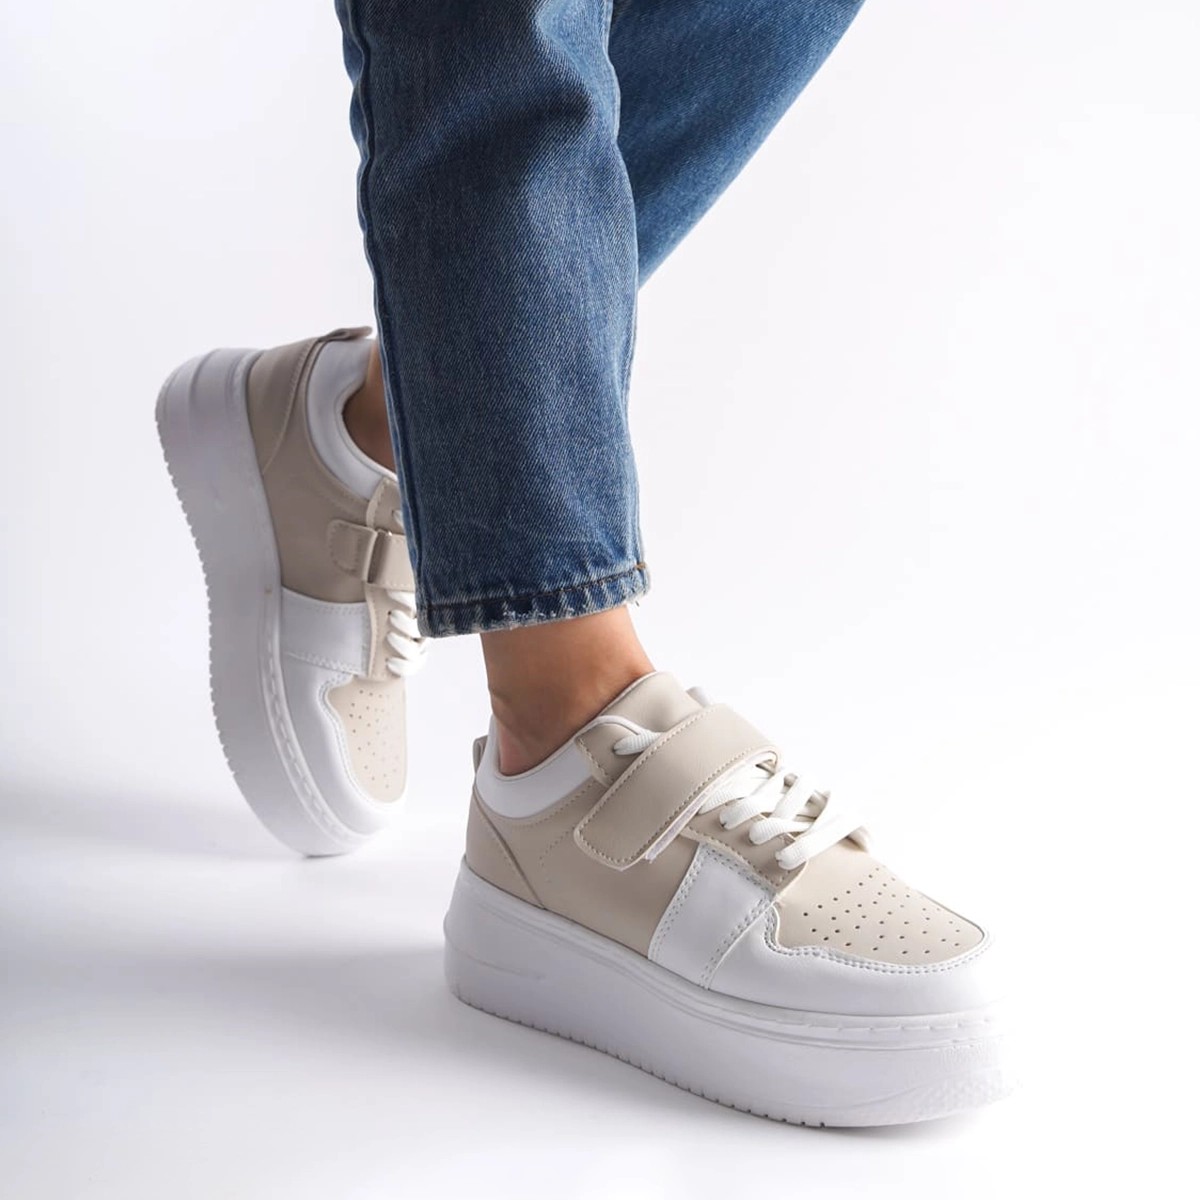 Kalın Tabanlı Sneaker Spor Ayakkabı - Beyaz